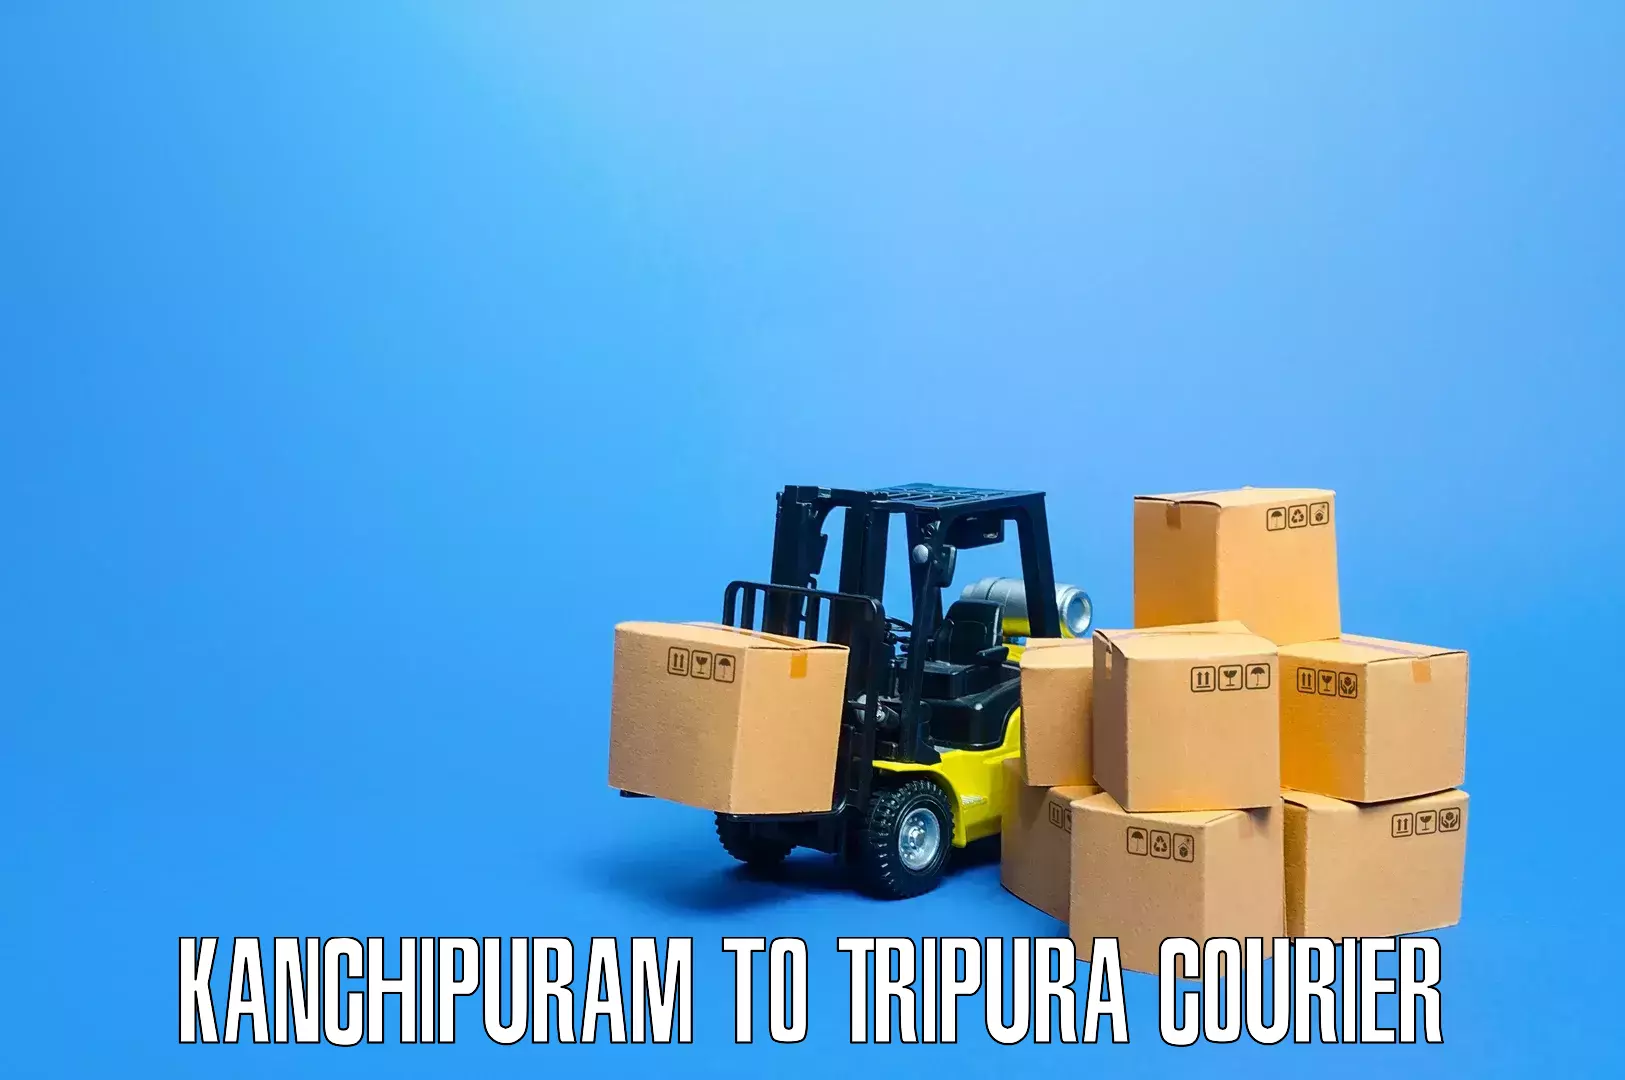 Expert furniture transport in Kanchipuram to Santirbazar